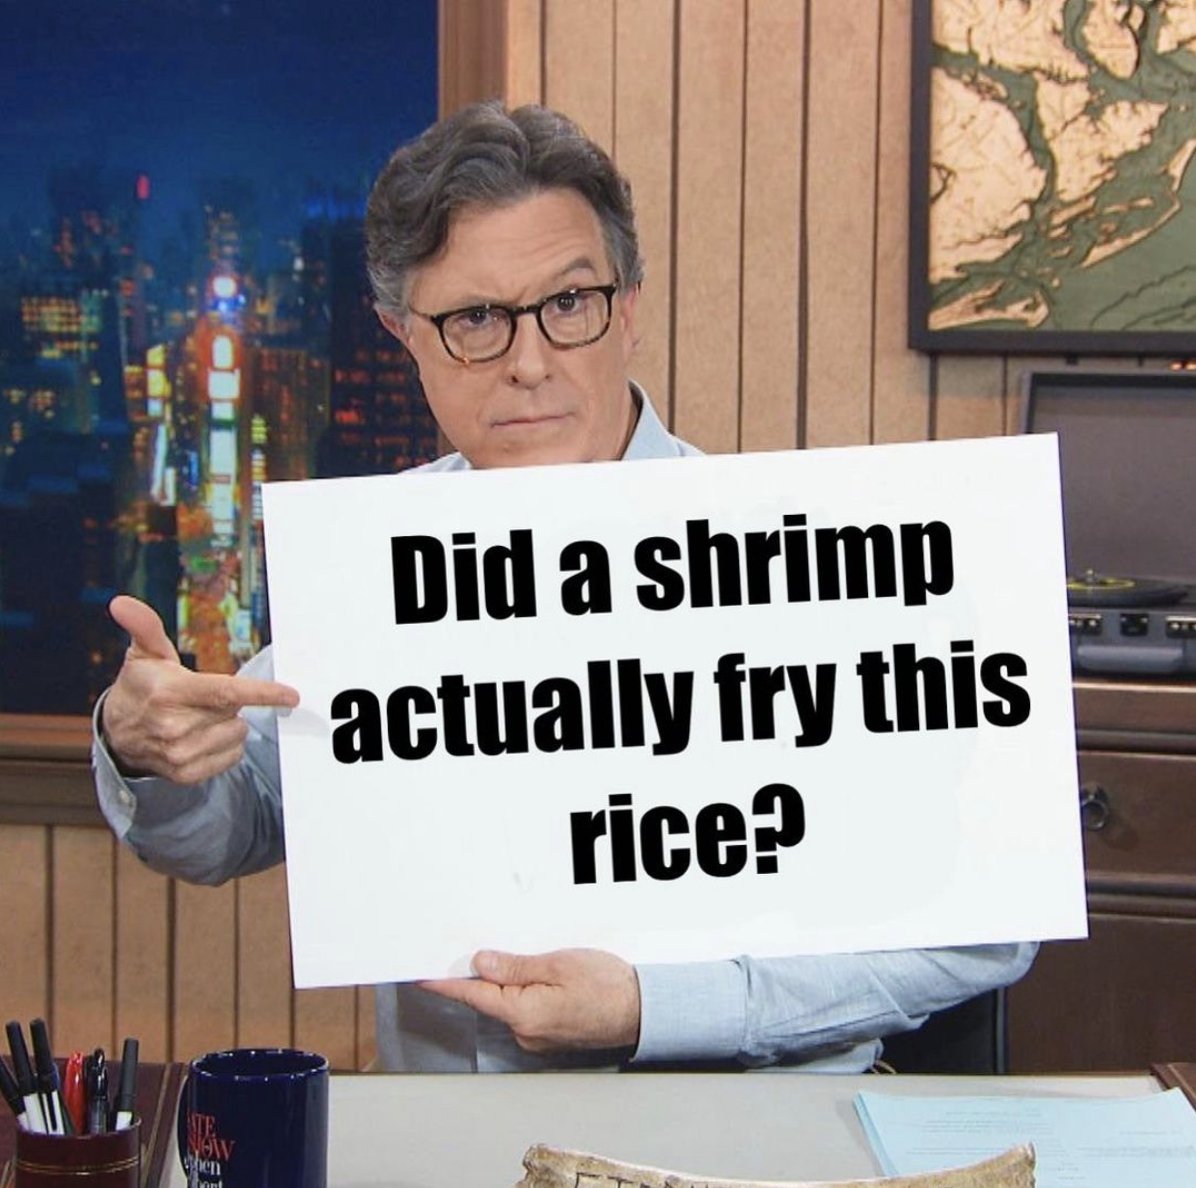 Sure did. #ShrimpFriedRice